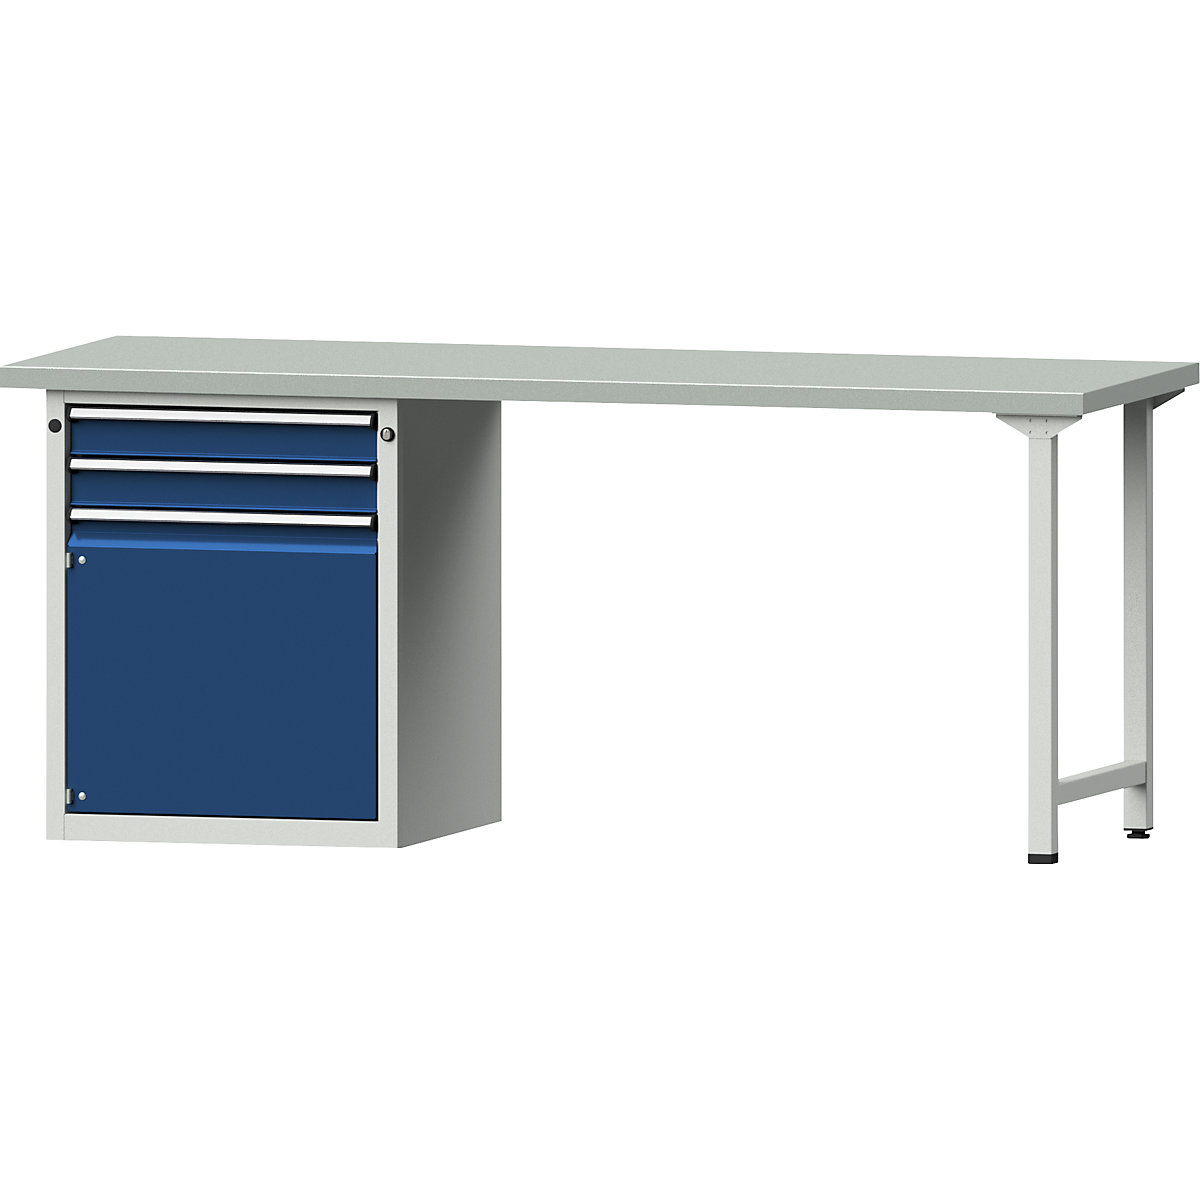 Dílenský stůl s rámovou konstrukcí – ANKE, 2 zásuvky, 1 dveře, deska s potahem z ocelového plechu, šířka 2000 mm